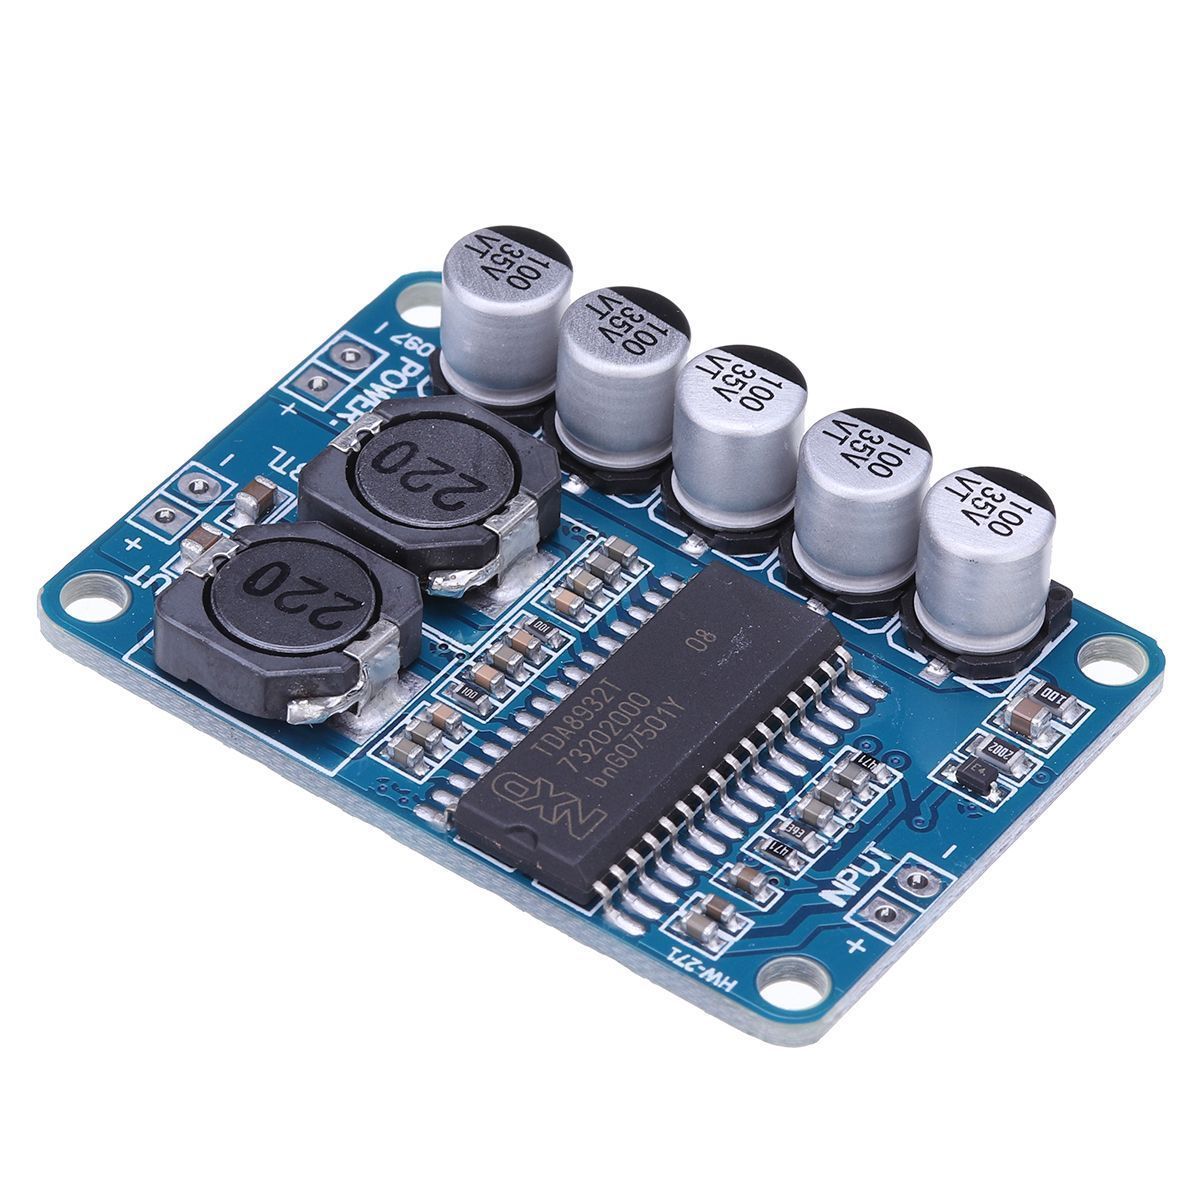 TDA8932-35W-Digital-Amplifier-Board-Module-Mono-amplifier-Low-Power-Consumption-1460337